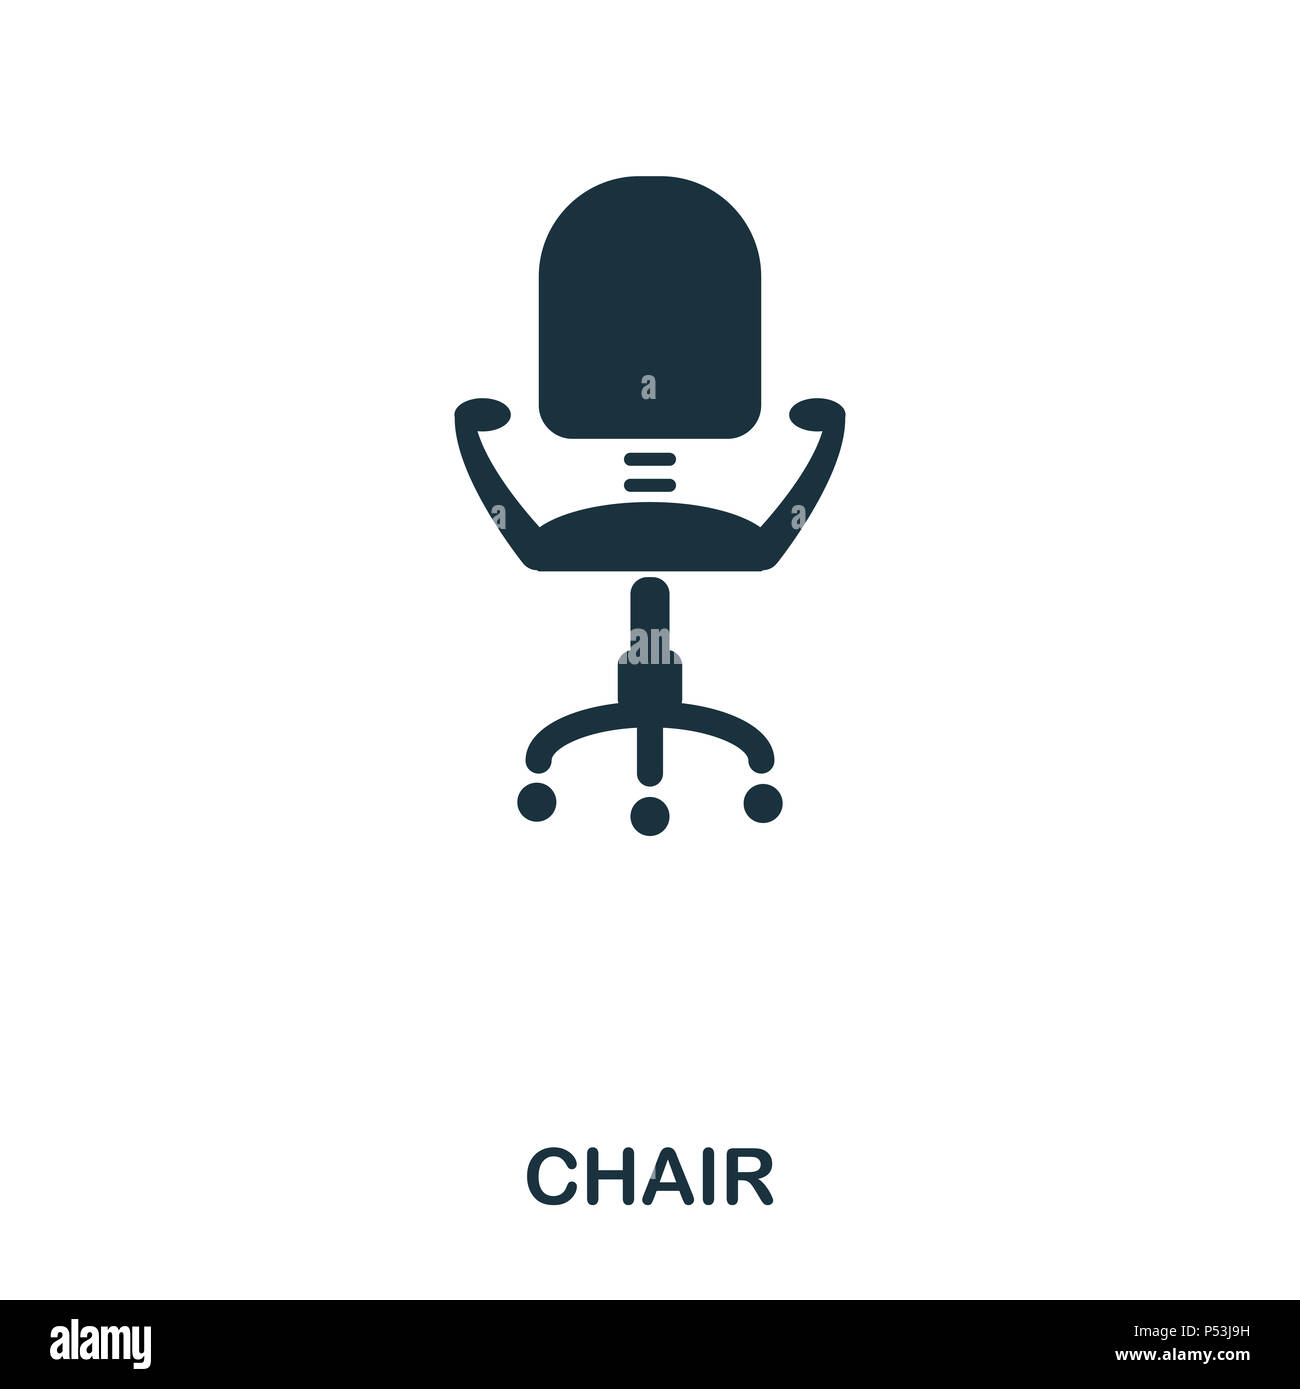 Stuhl Symbol. Line Style Icon Design. UI. Abbildung: Stuhl Symbol.  Piktogramm isoliert auf Weiss. Fertig in web design, Anwendungen, Software,  Druck verwenden Stockfotografie - Alamy